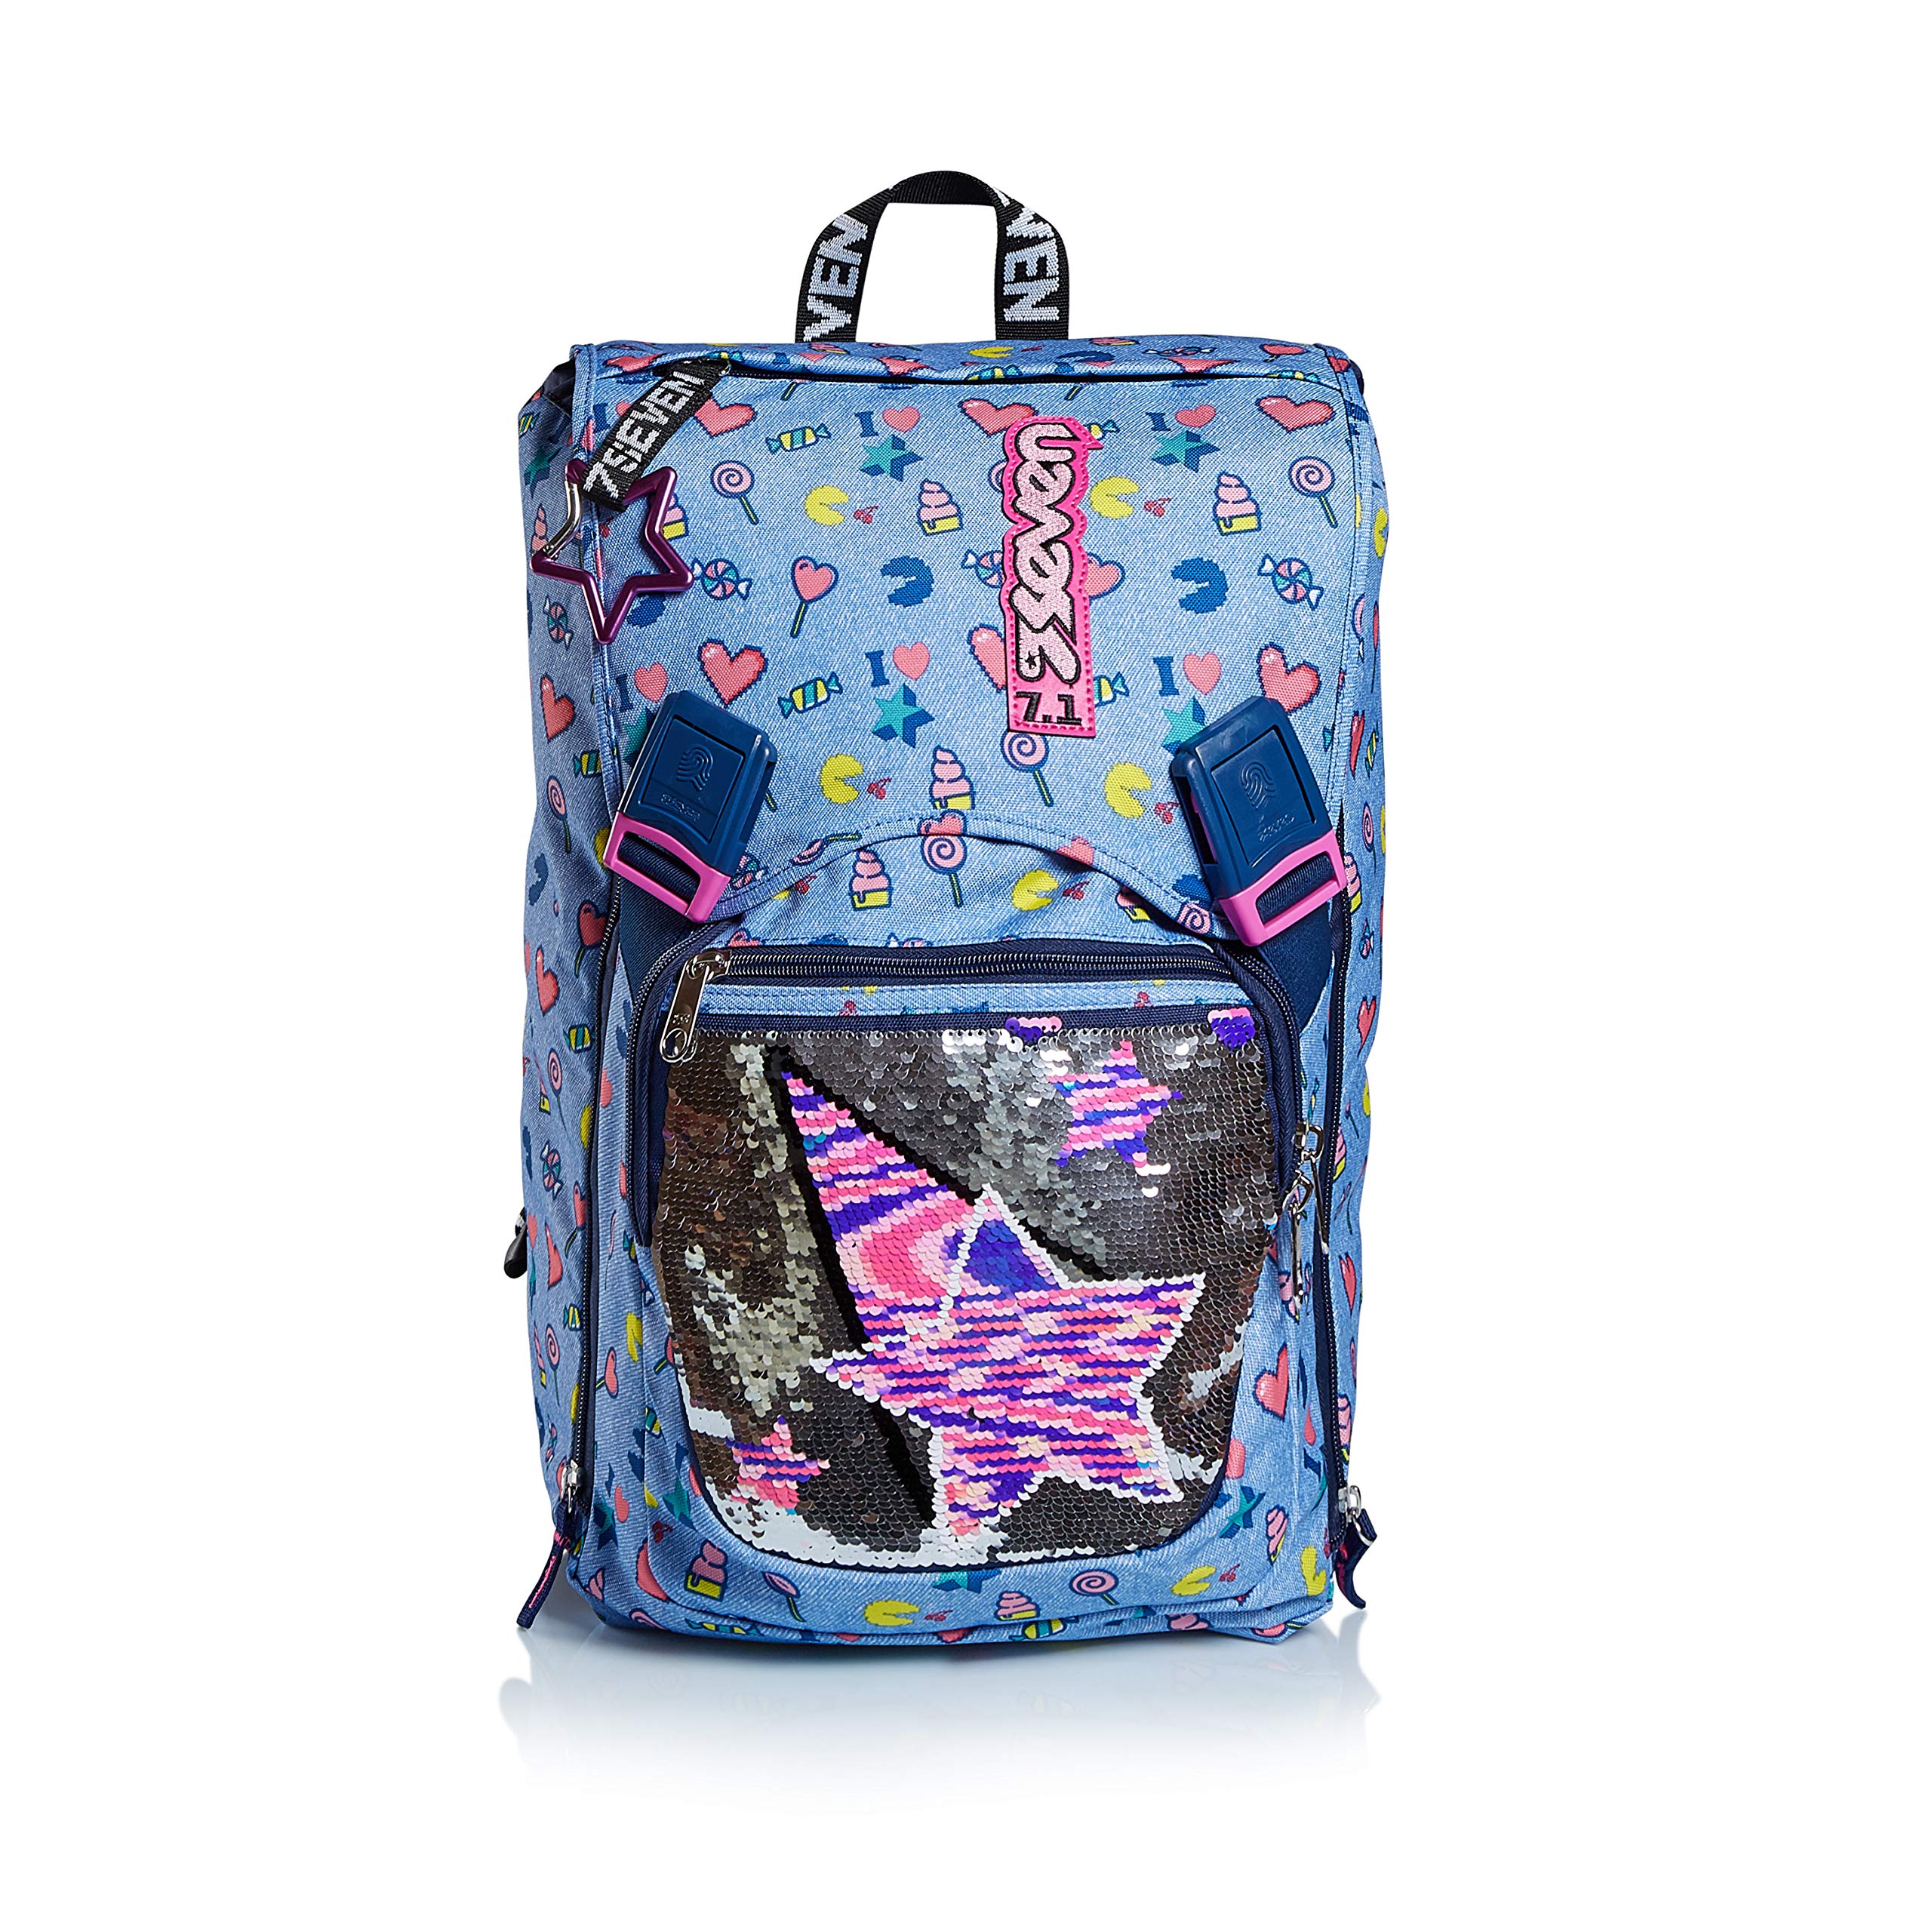 RUCKSACK SEVEN STARRY RAINBOW Backpack für Schule, Uni & Freizeit, Erweiterbarer Schulranzen, Geräumige Schultasche für Teenager, Mädchen und Jungen, Extra Platz, blau